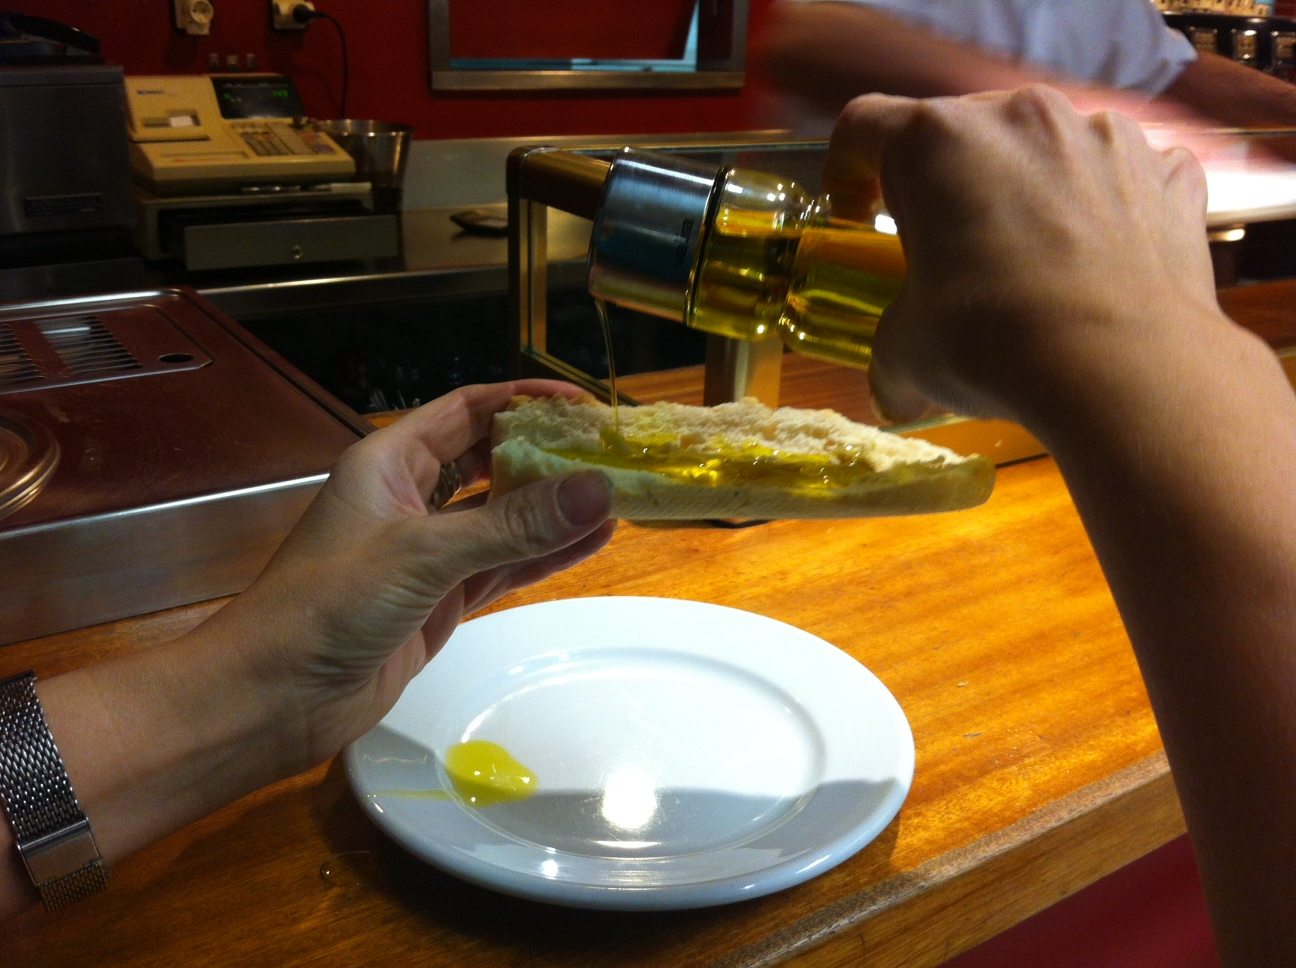 Un comensal extiende aceite de oliva sobre una tostada, en imagen de archivo. Foto: J.J.RÍOS